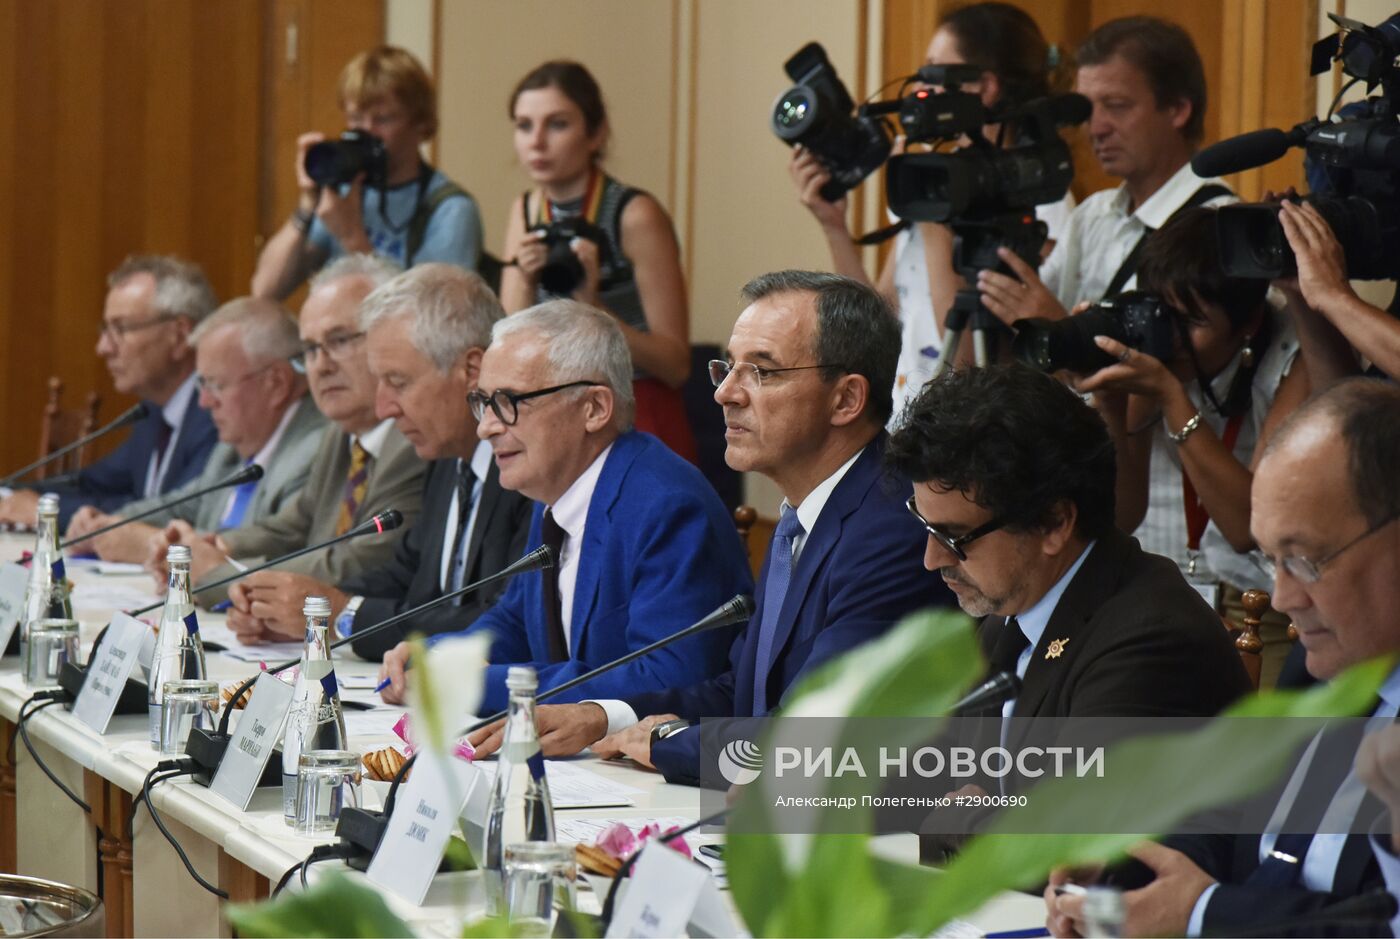 Прибытие французской парламентской делегации в Симферополь